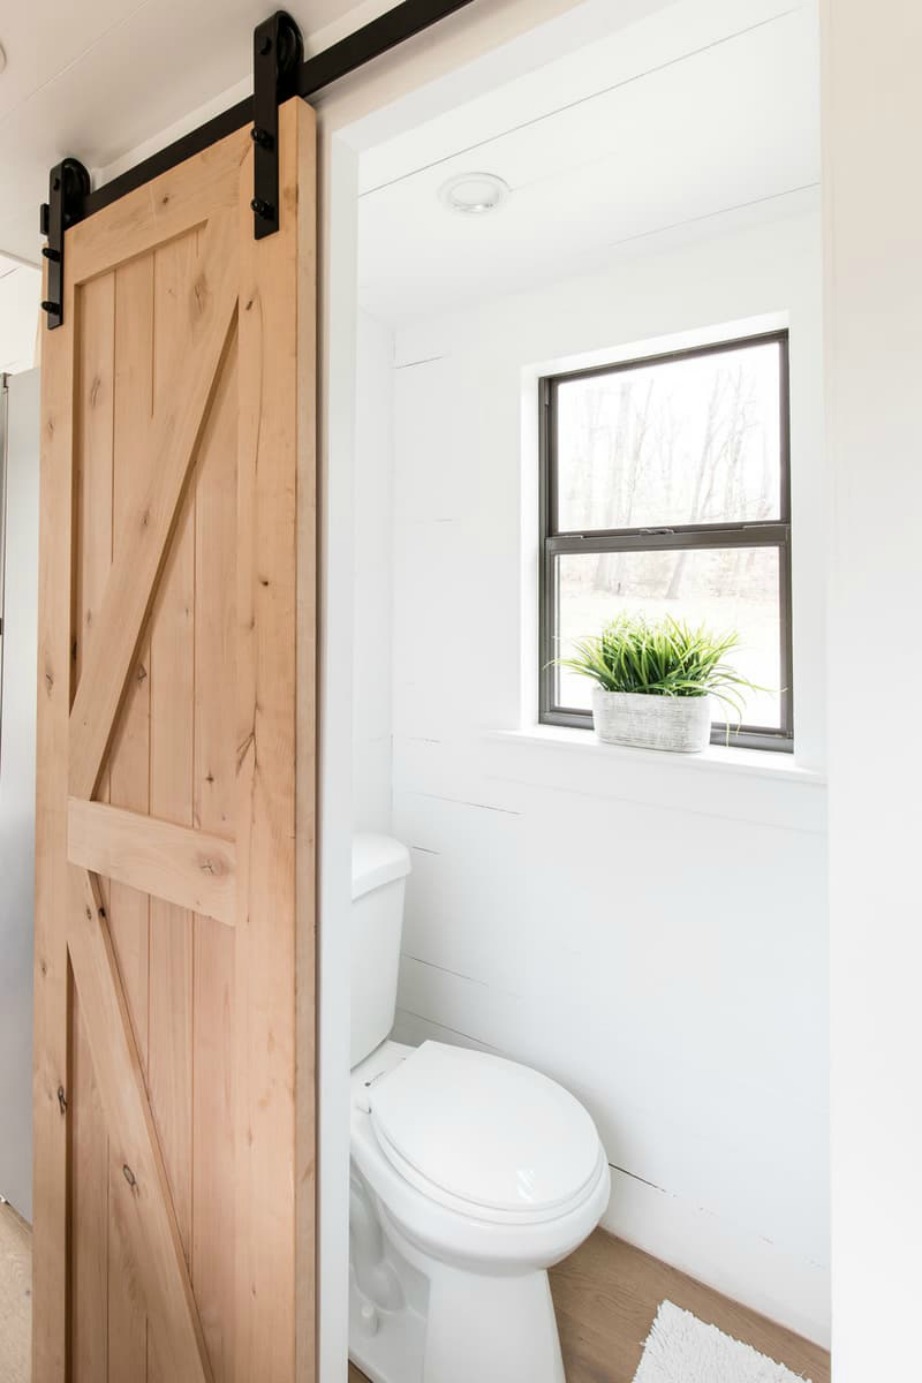 Οι συρόμενες πόρτες βοηθούν σημαντικά στο να εξοικονομήσουμε χώρο στο διαμέρισμά.